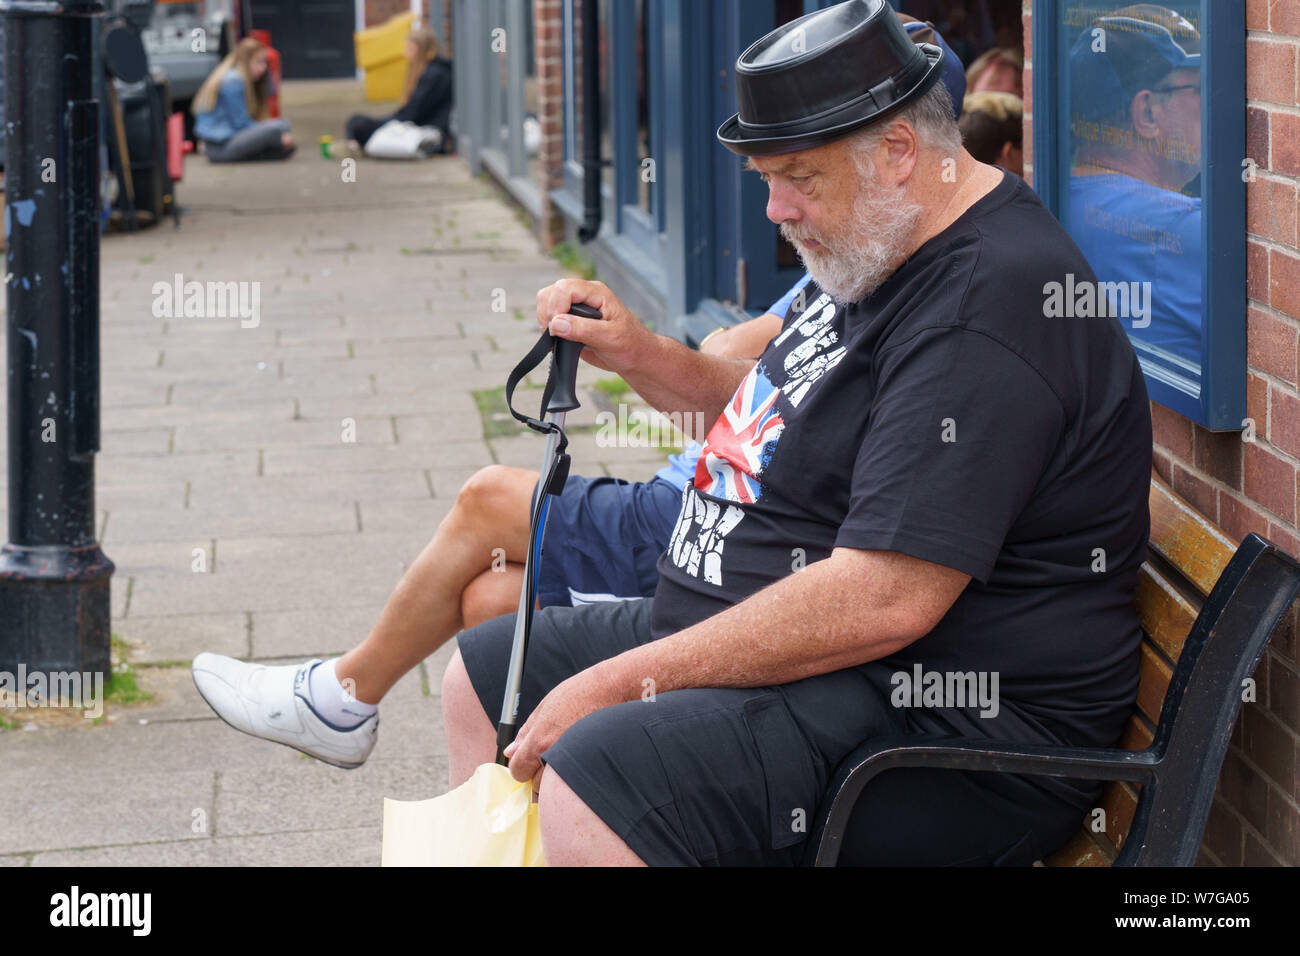 Homme âgé avec une barbe grise assis sur un siège portant un t-shirt punk rock noir et un chapeau en plastique, York, North Yorkshire, Angleterre, Royaume-Uni. Banque D'Images